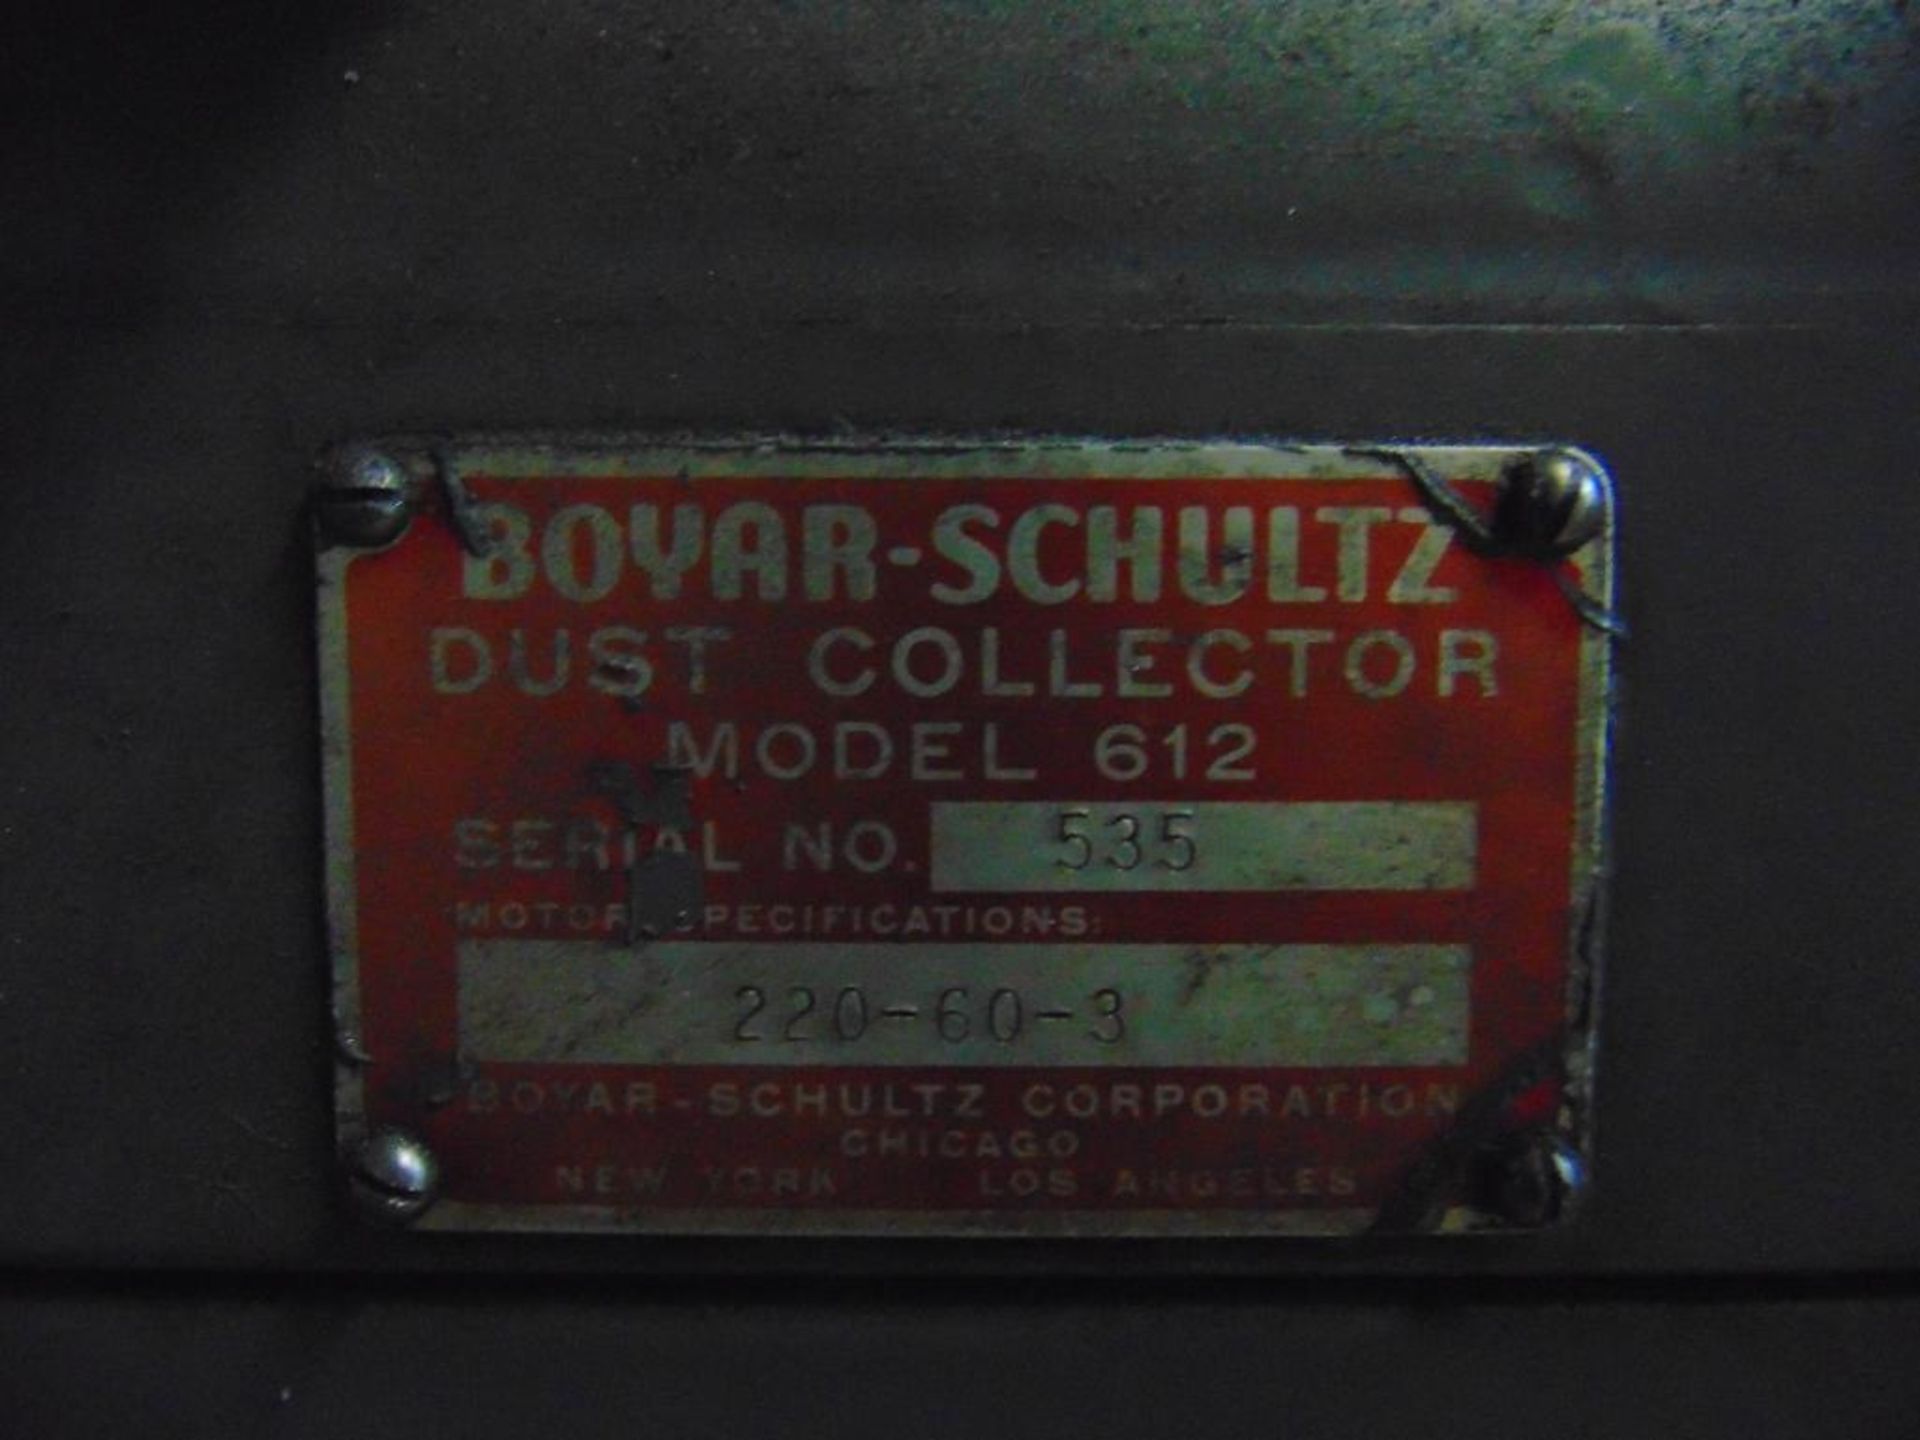 Boyar-Schultz Model 612 Surface Grinder - Image 6 of 7